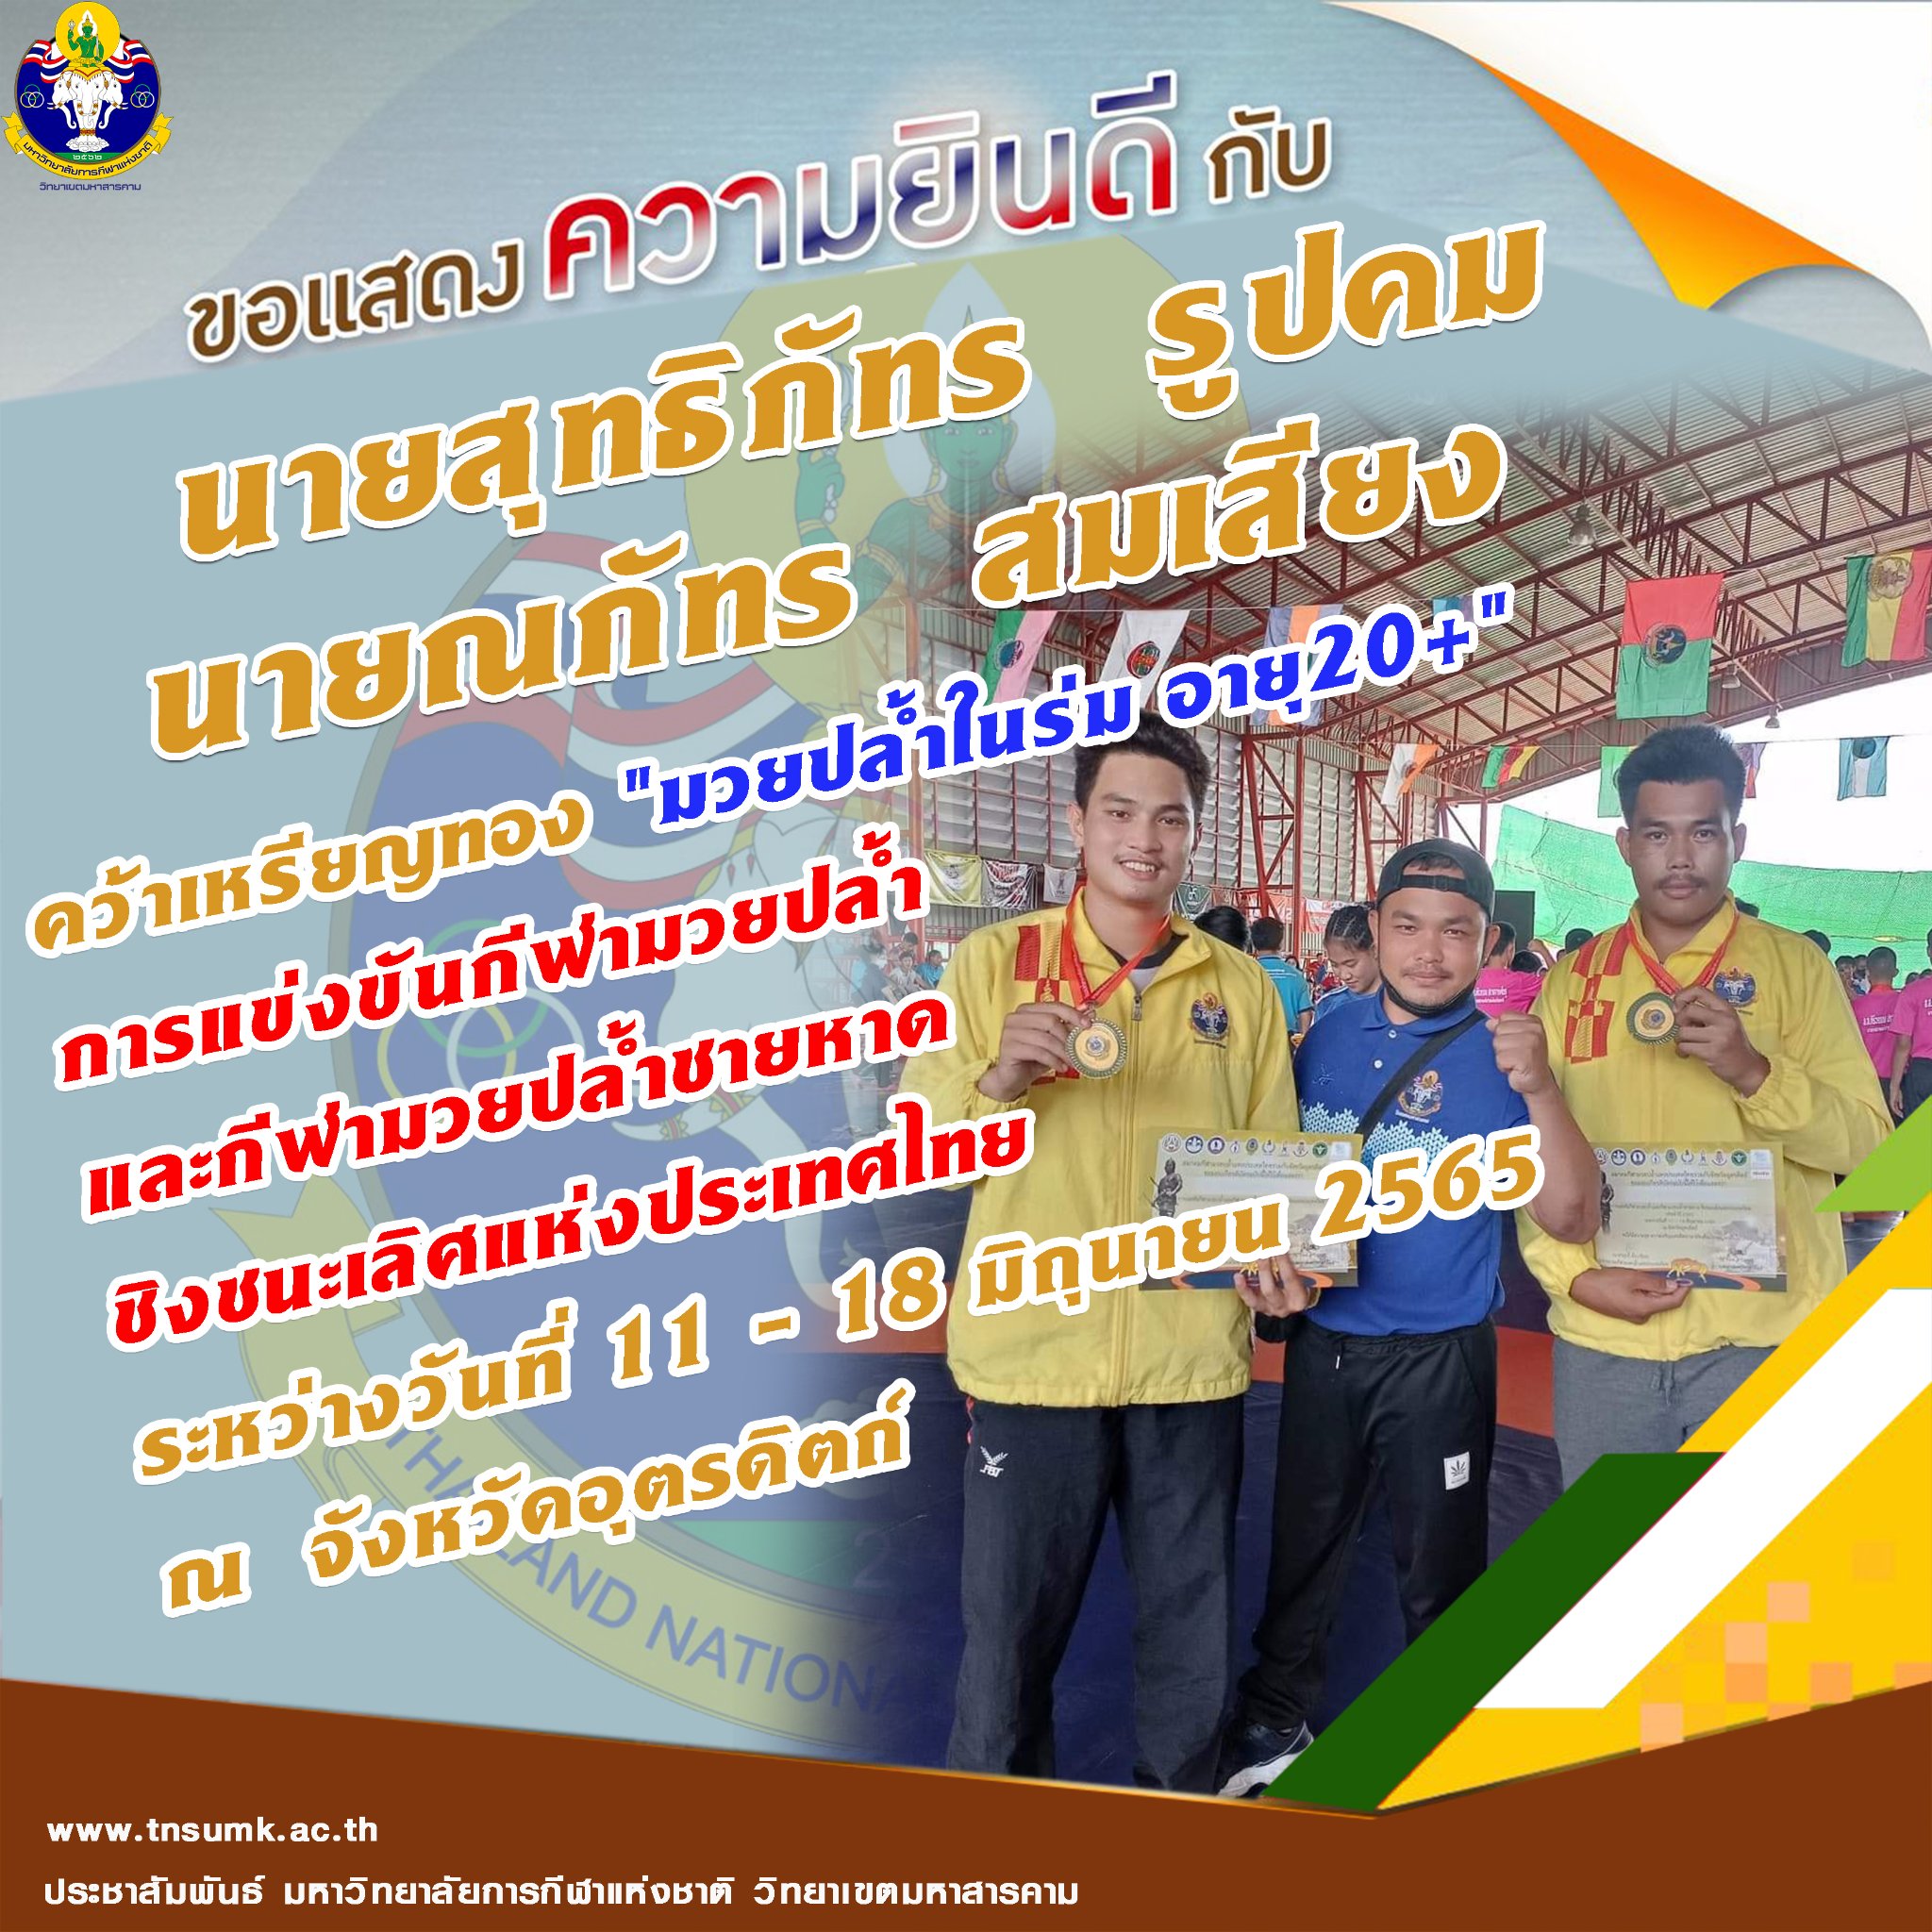 ขอแสดงความยินดีกับทีมกีฬามวยปล้ำที่ได้ 2 เหรียญทอง ในการแข่งขันกีฬามวยปล้ำและกีฬามวยปล้ำชายหาดชิงชนะเลิศแห่งประเทศไทย 2565